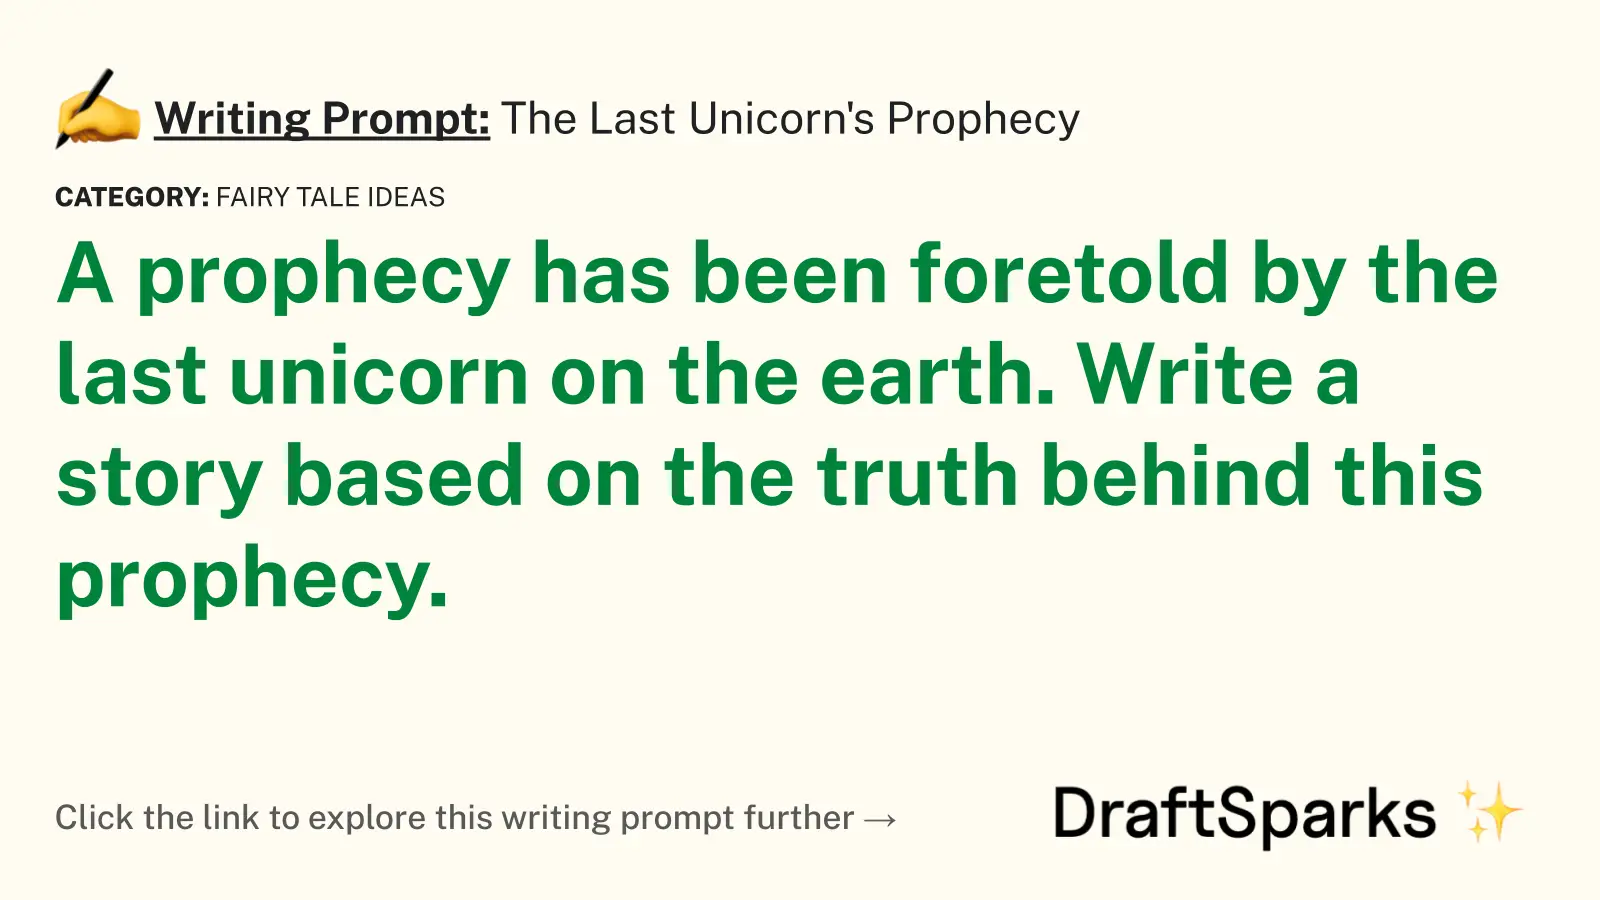 The Last Unicorn’s Prophecy